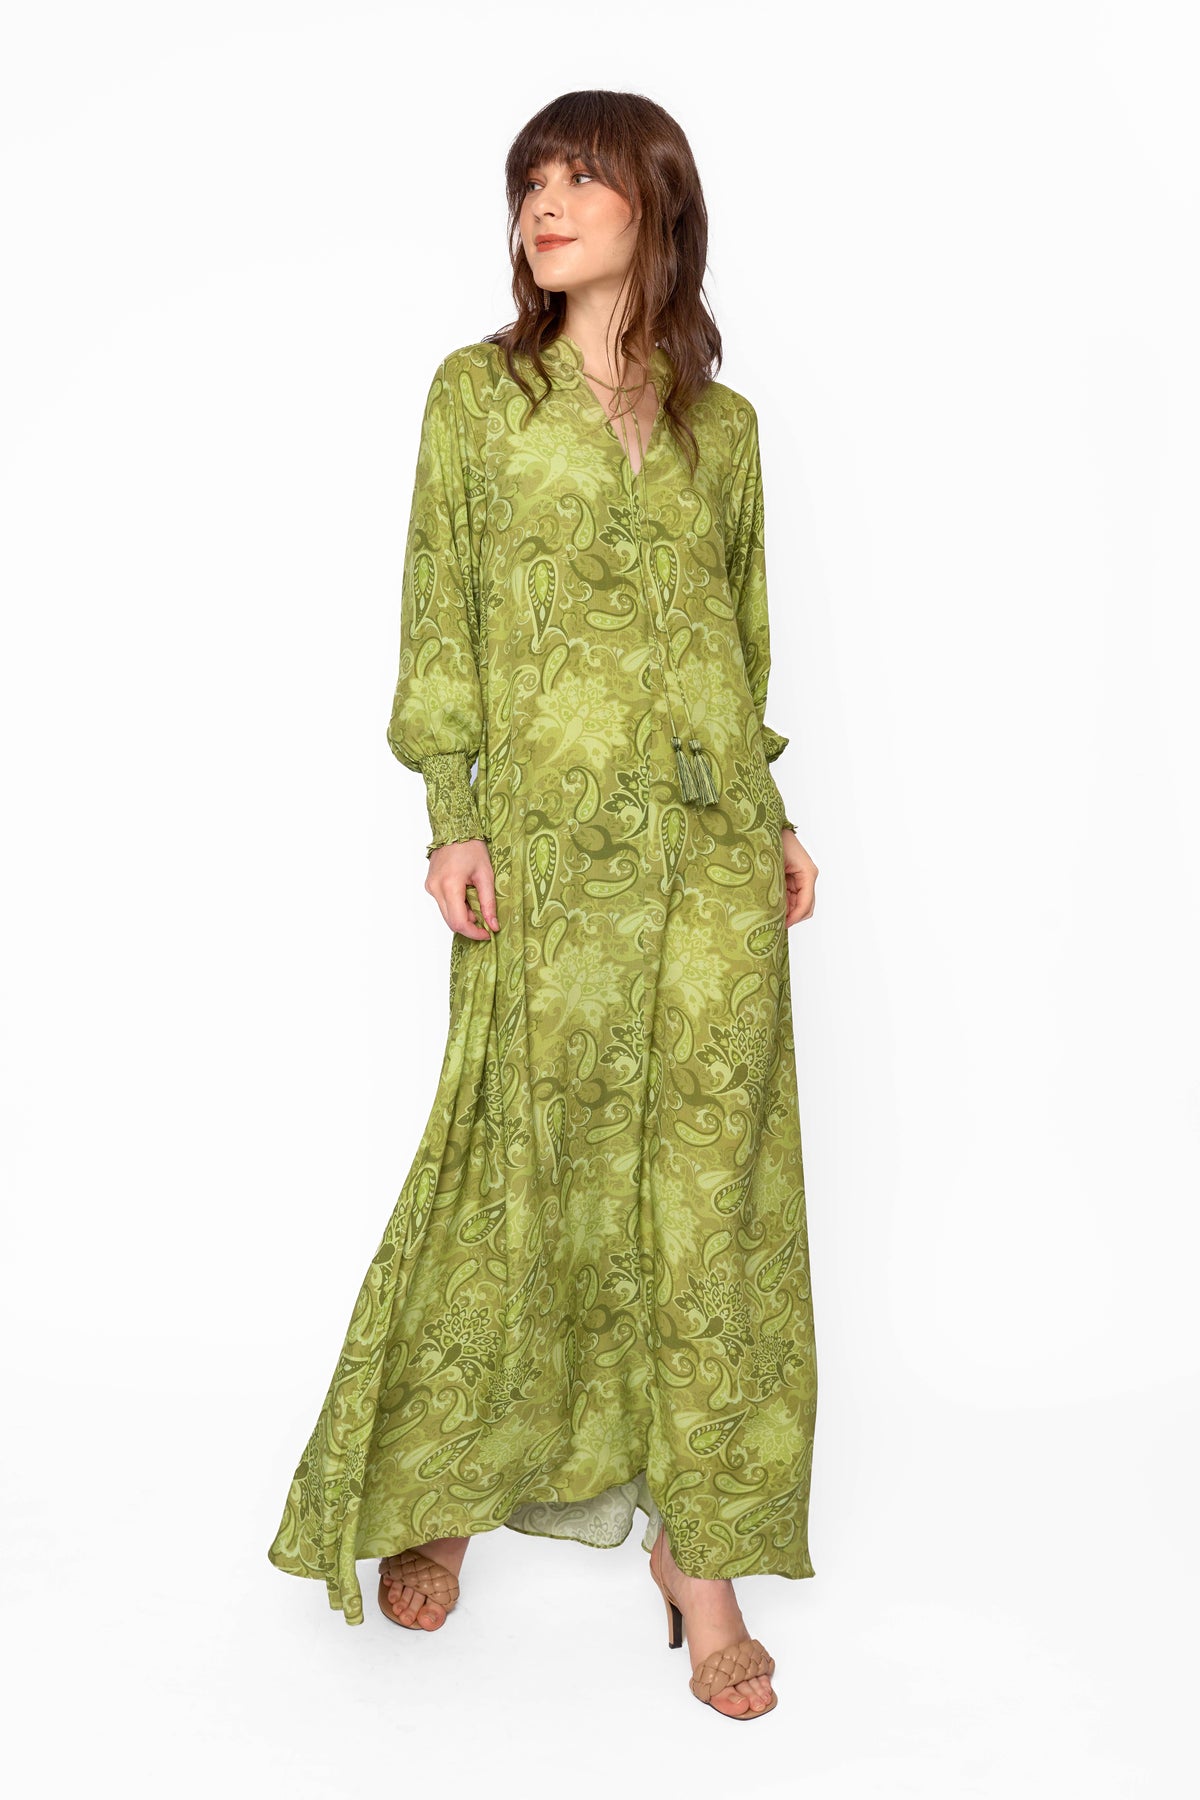 MAYLA Dress in Green Pakis